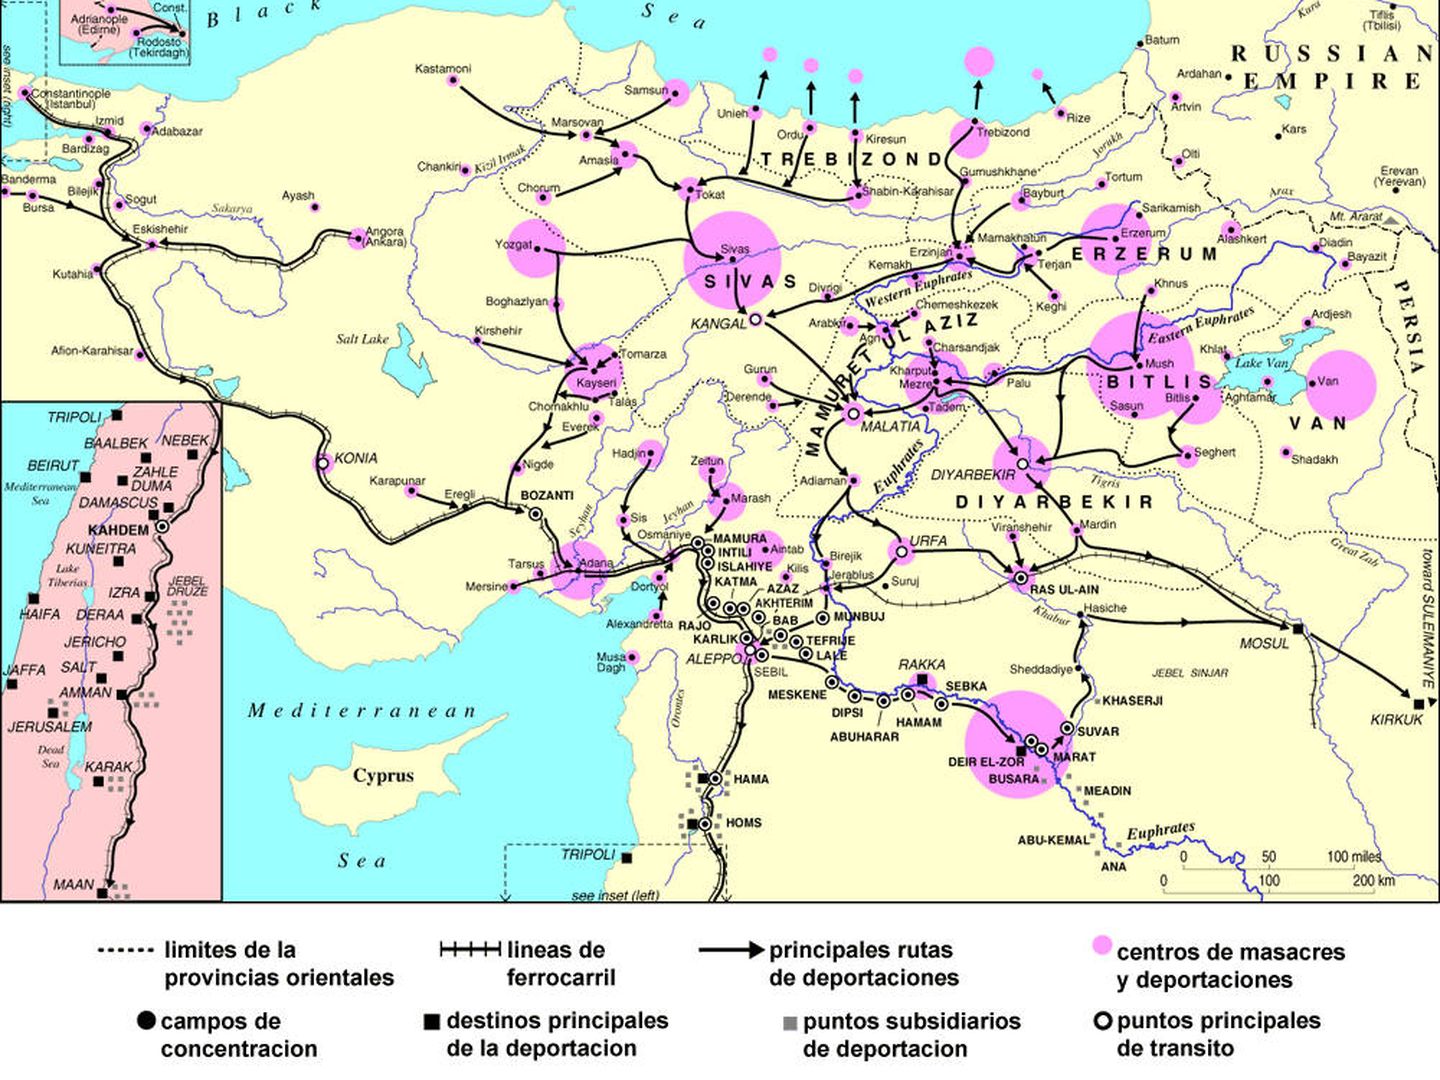 Mapa del genocido armenio